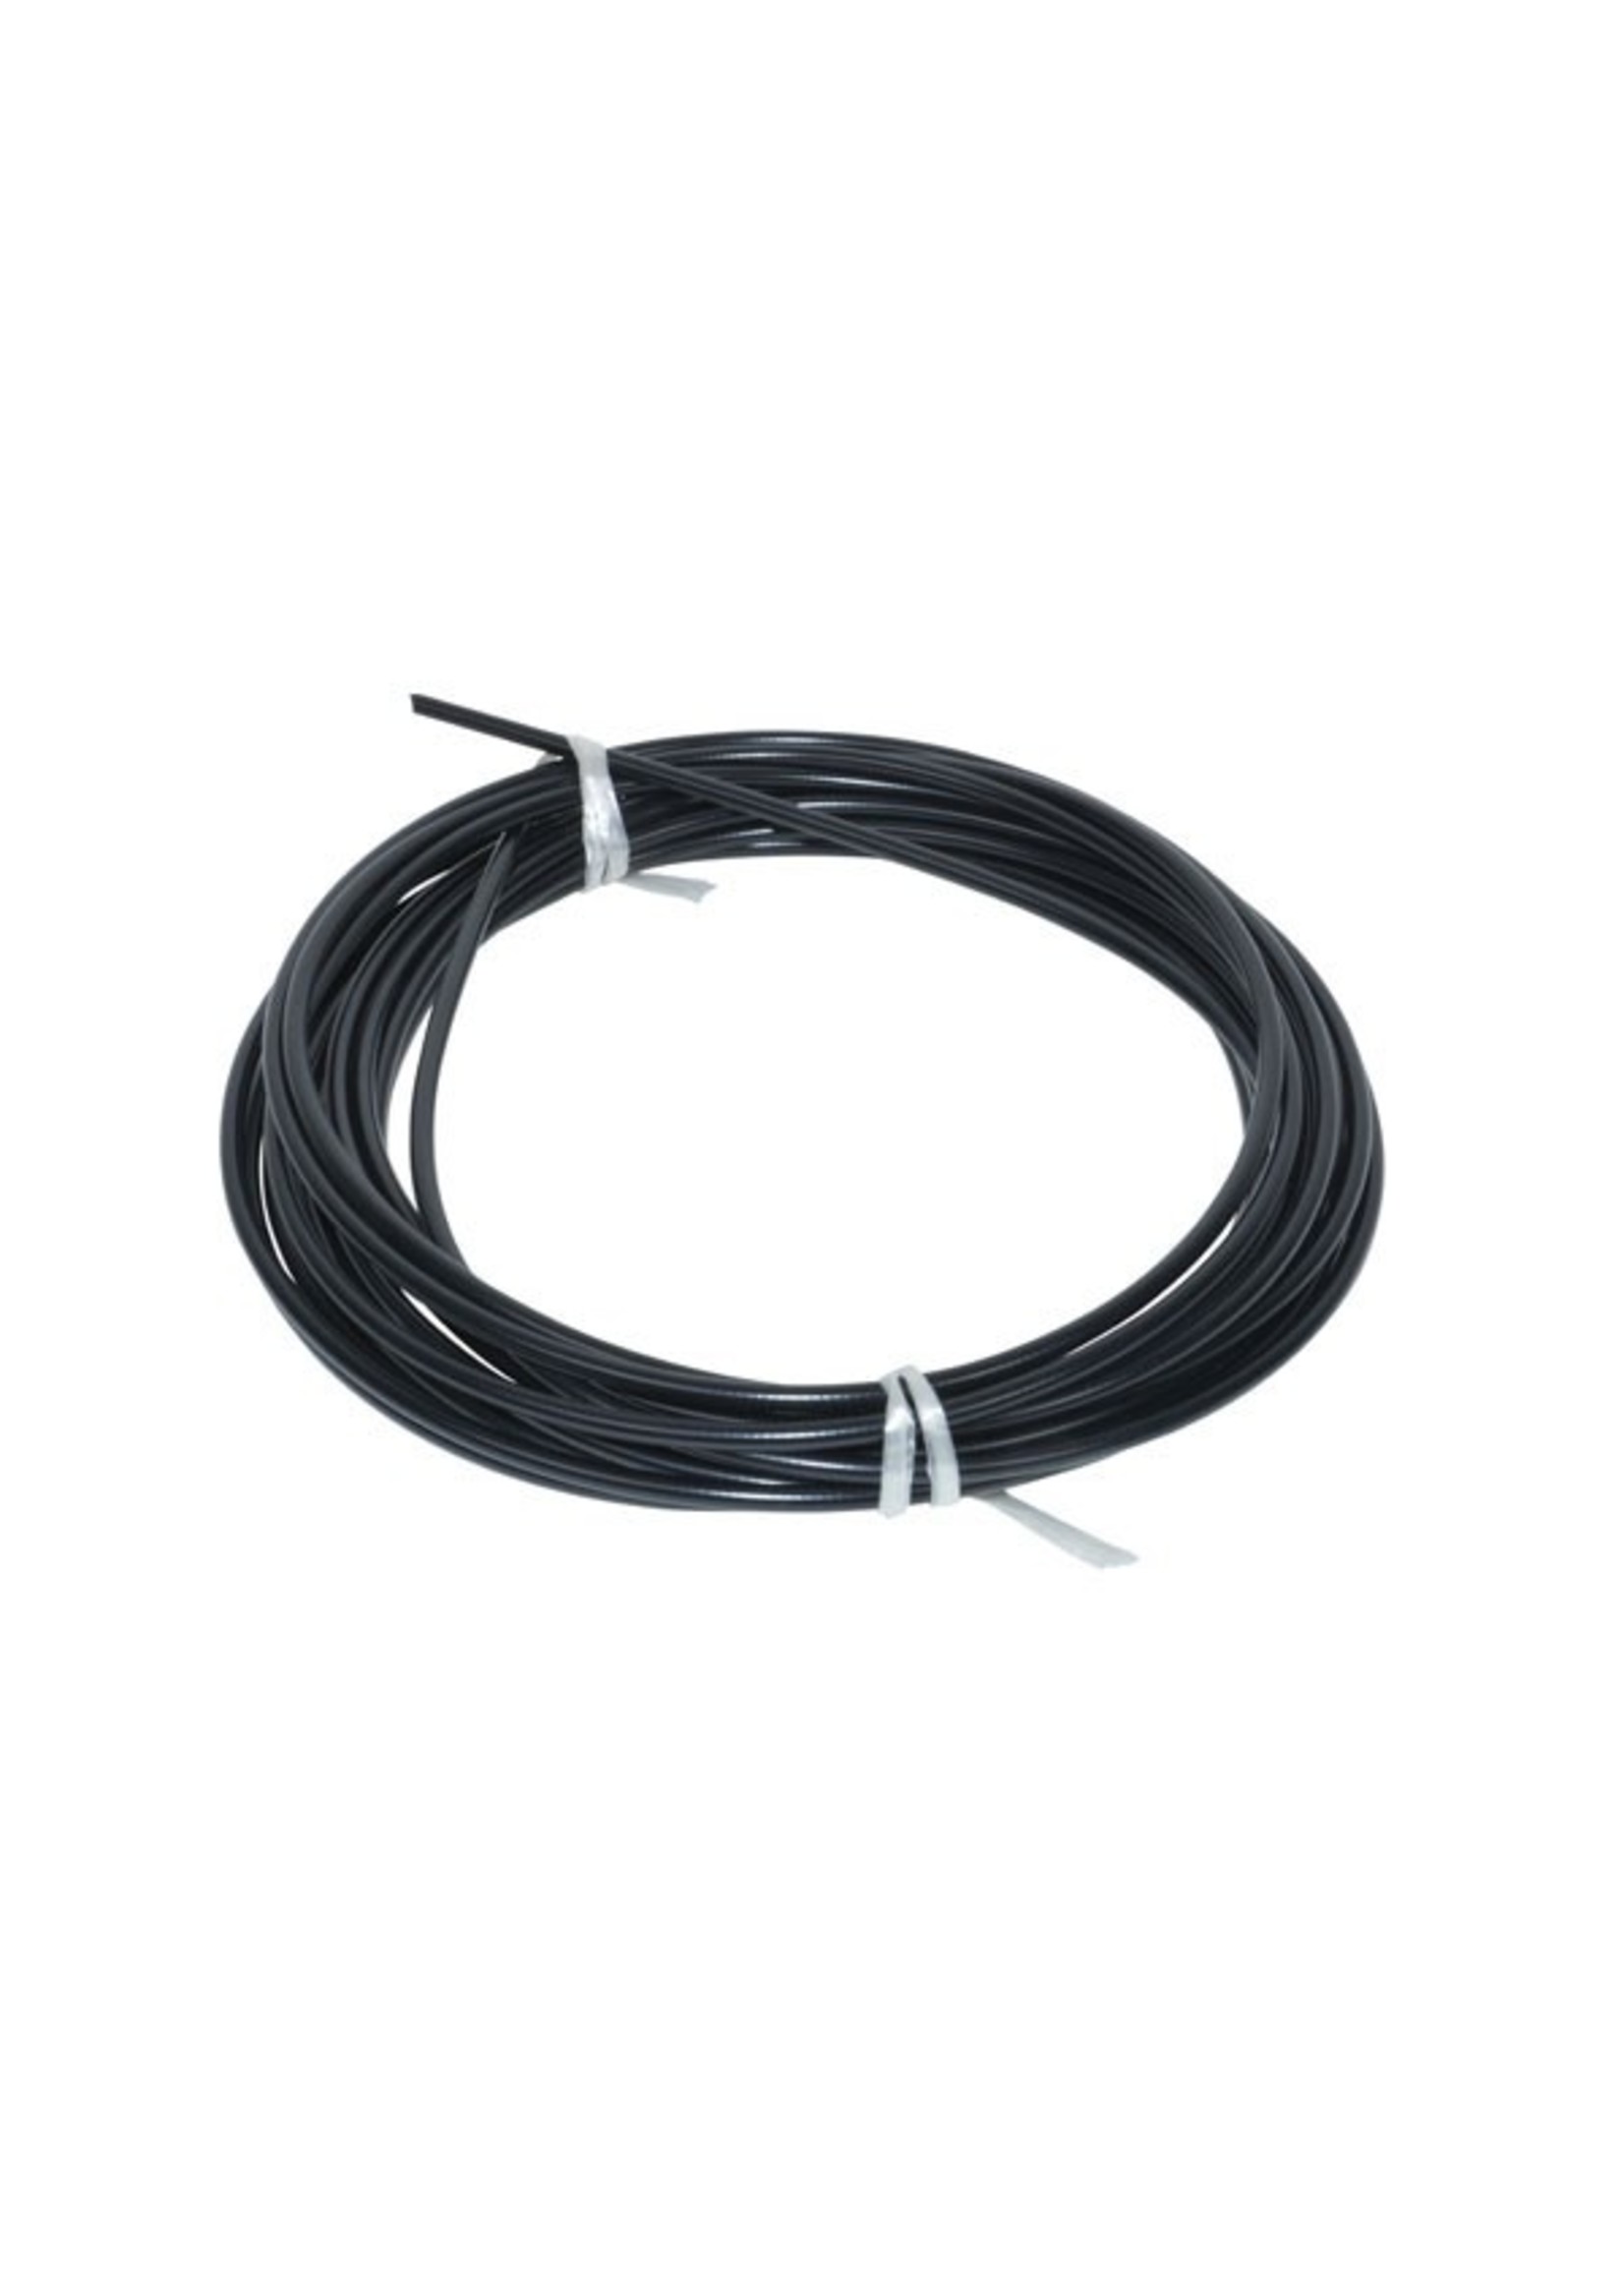 kabel buiten rol 5.5mm 10 meter zwart